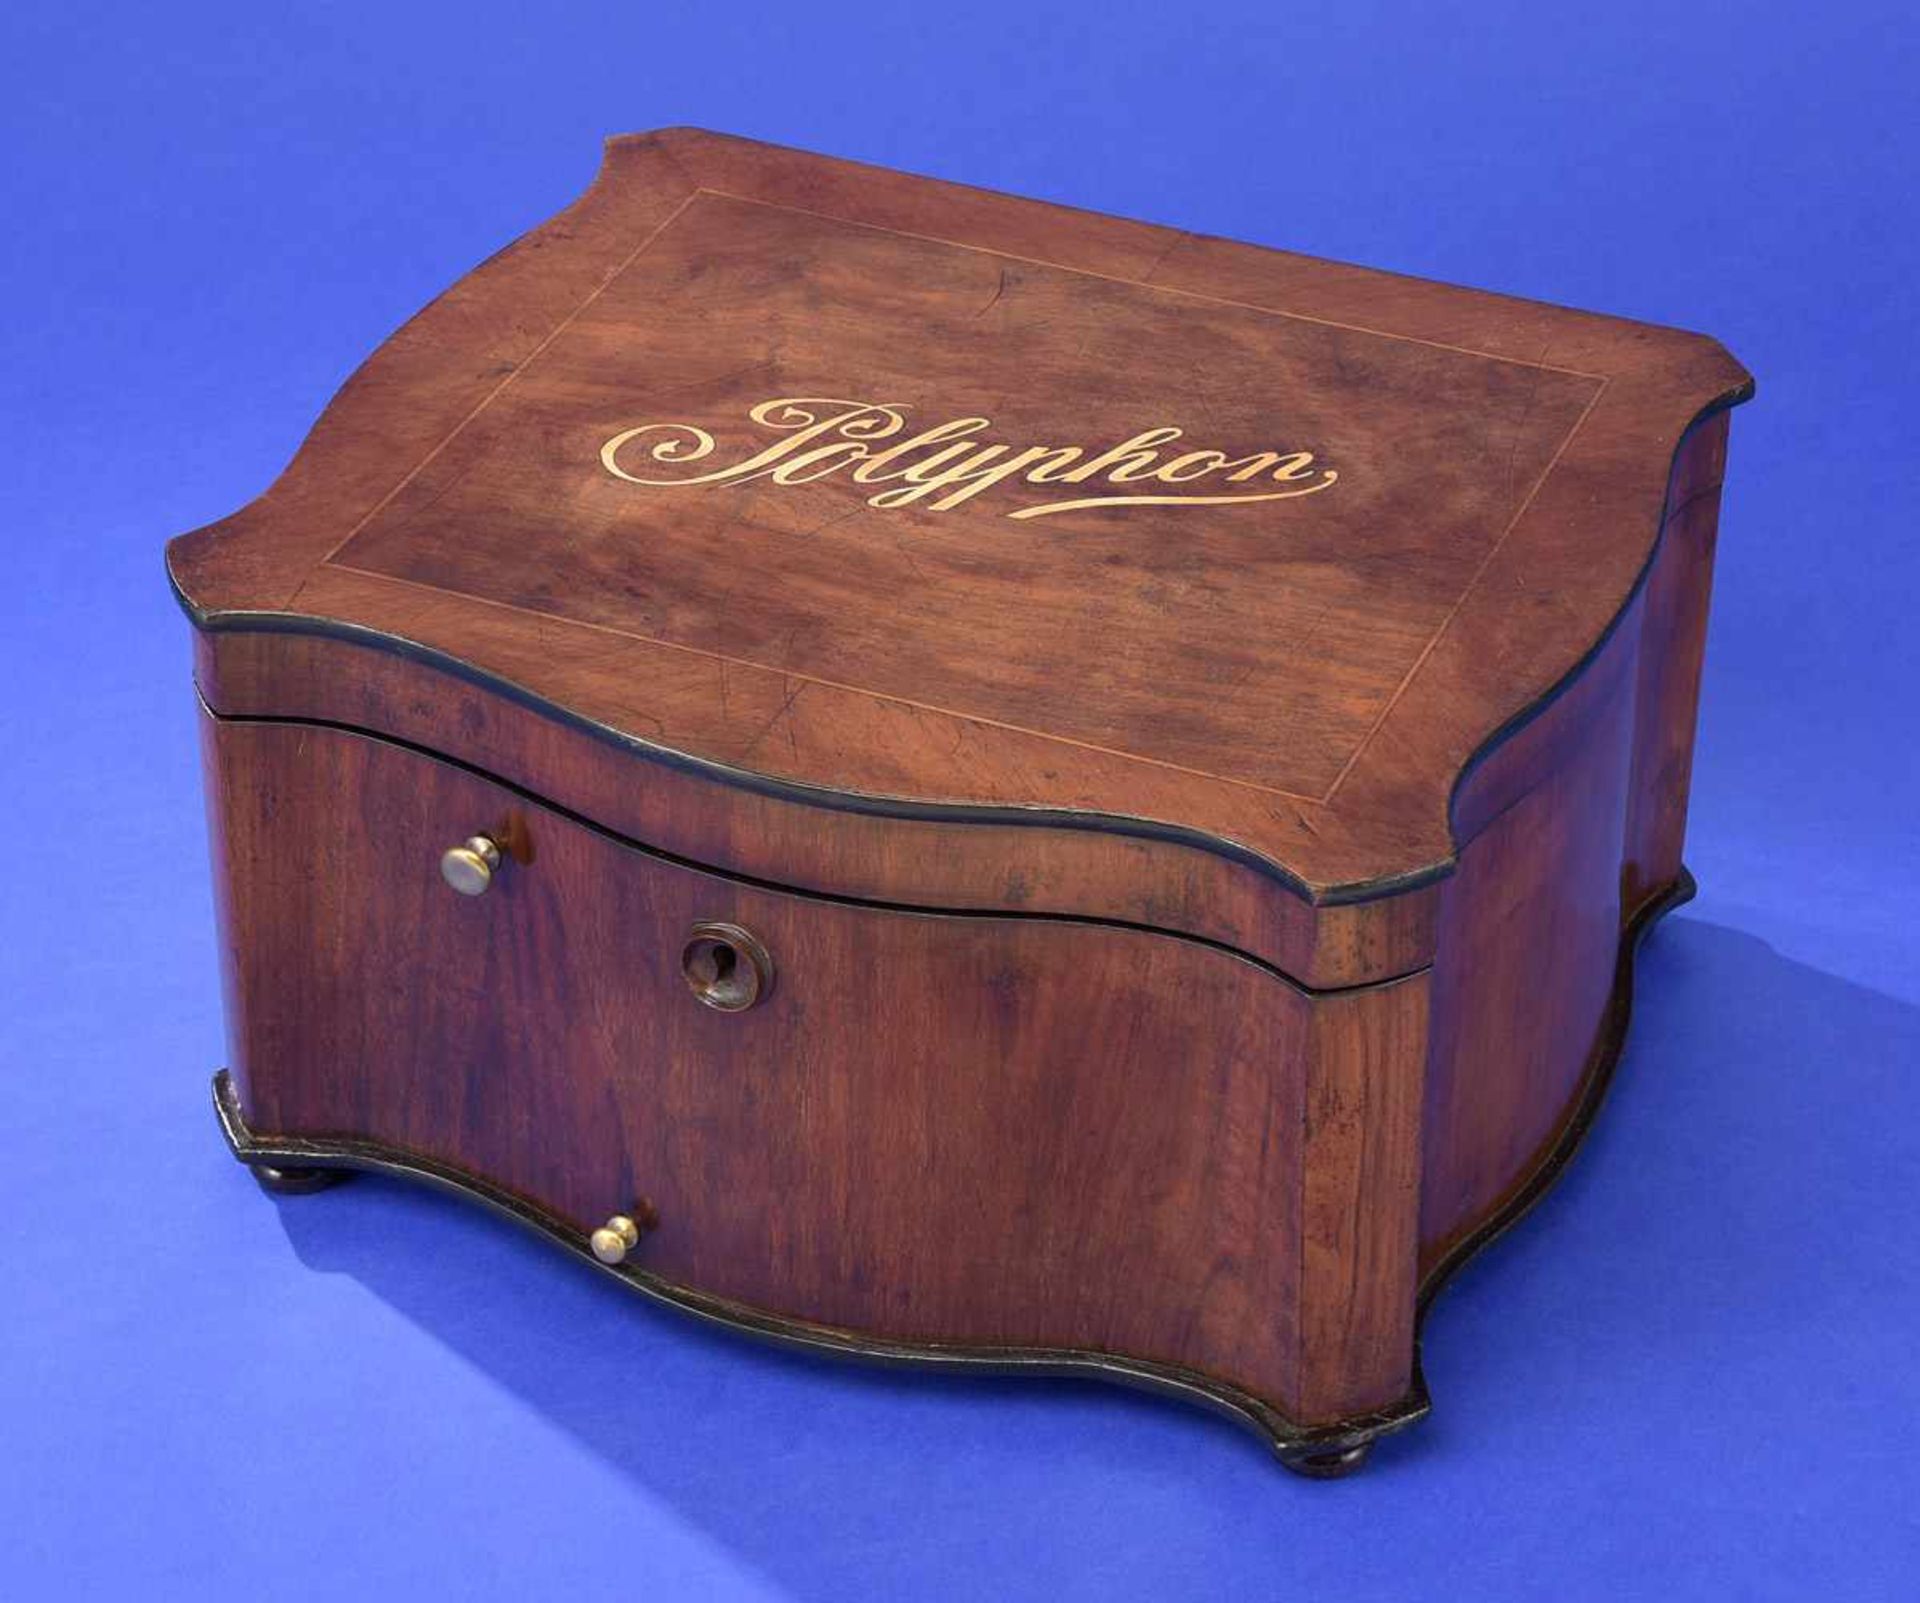 Plattenspieluhr der Marke Polyphon Um 1900Allseitig bewegtes Nussbaumgehäuse mit Zierintarsien. - Bild 2 aus 3